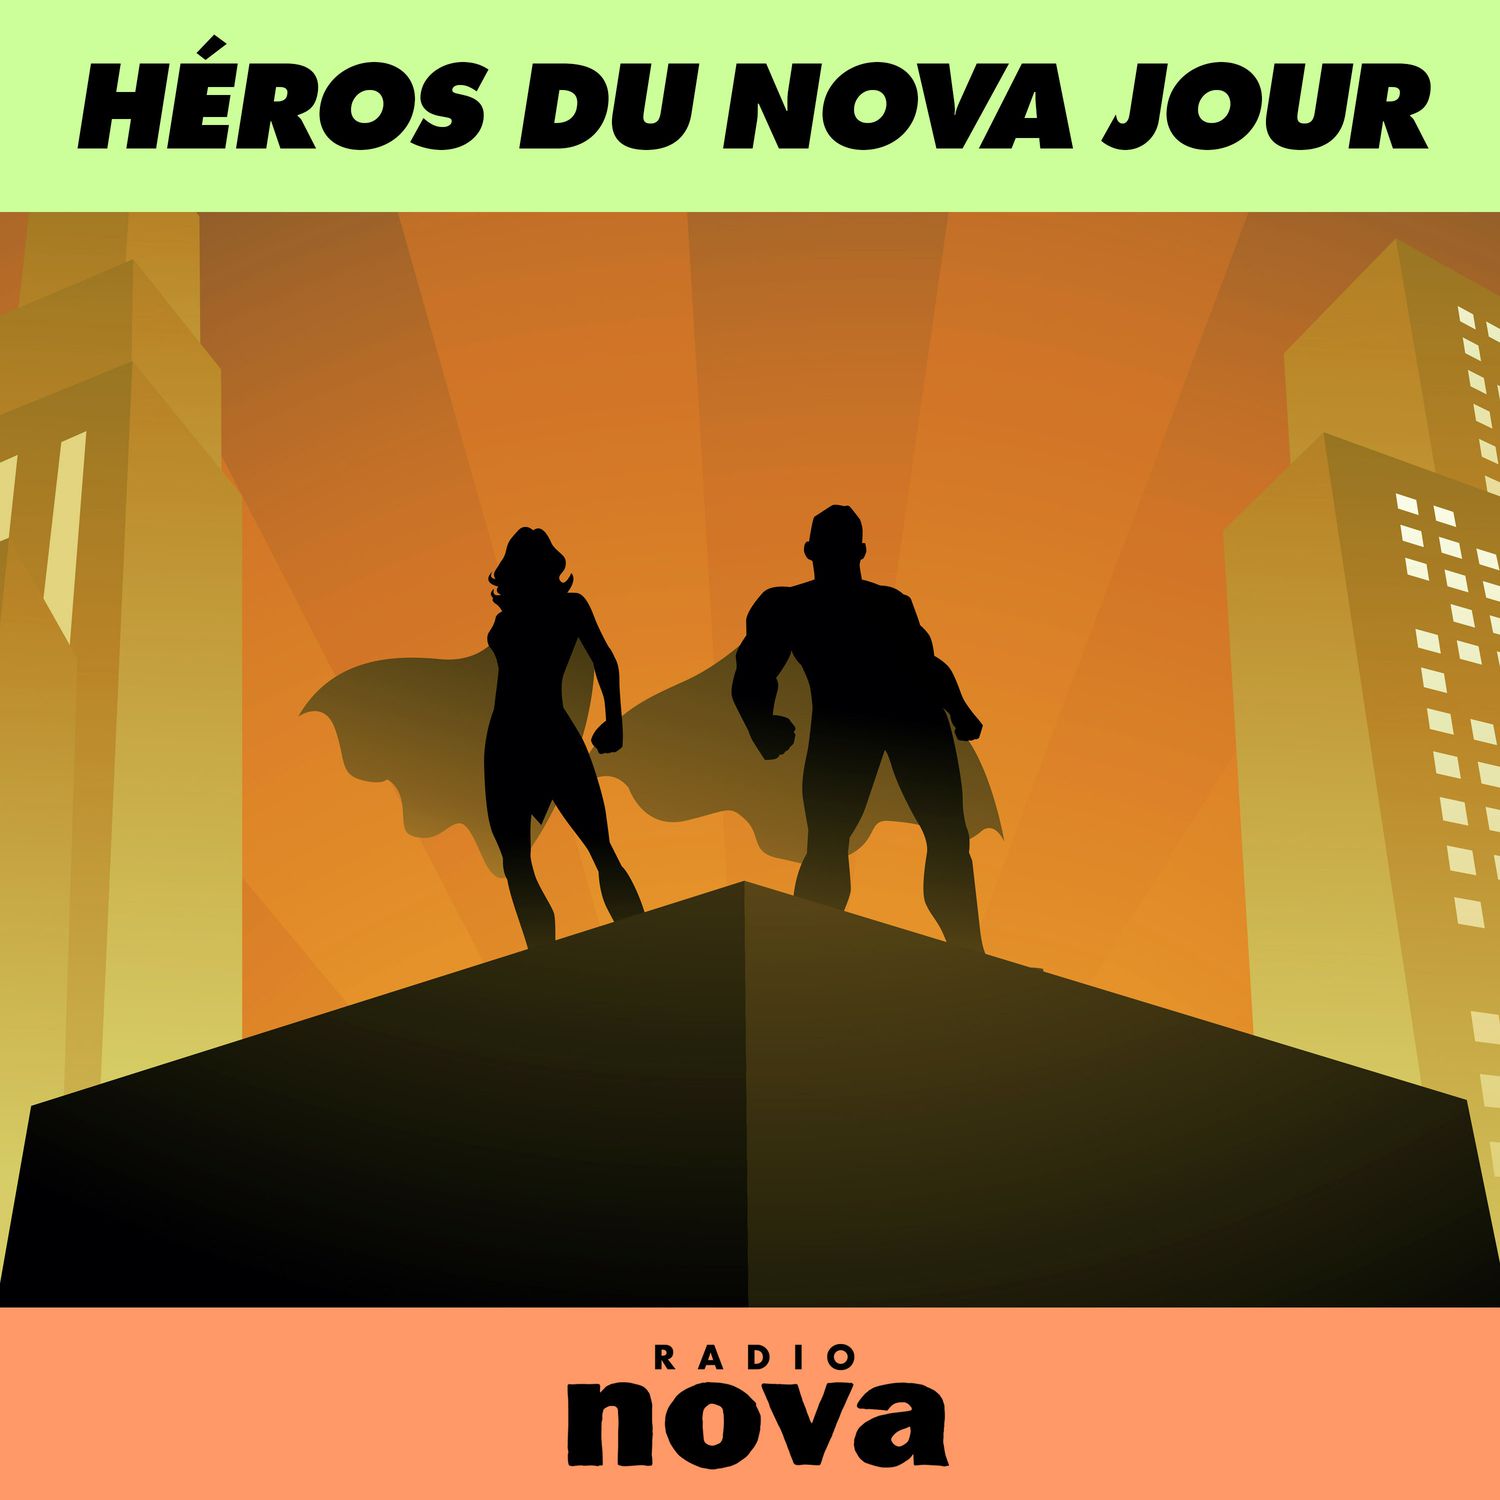 Le Héros du Nova jour